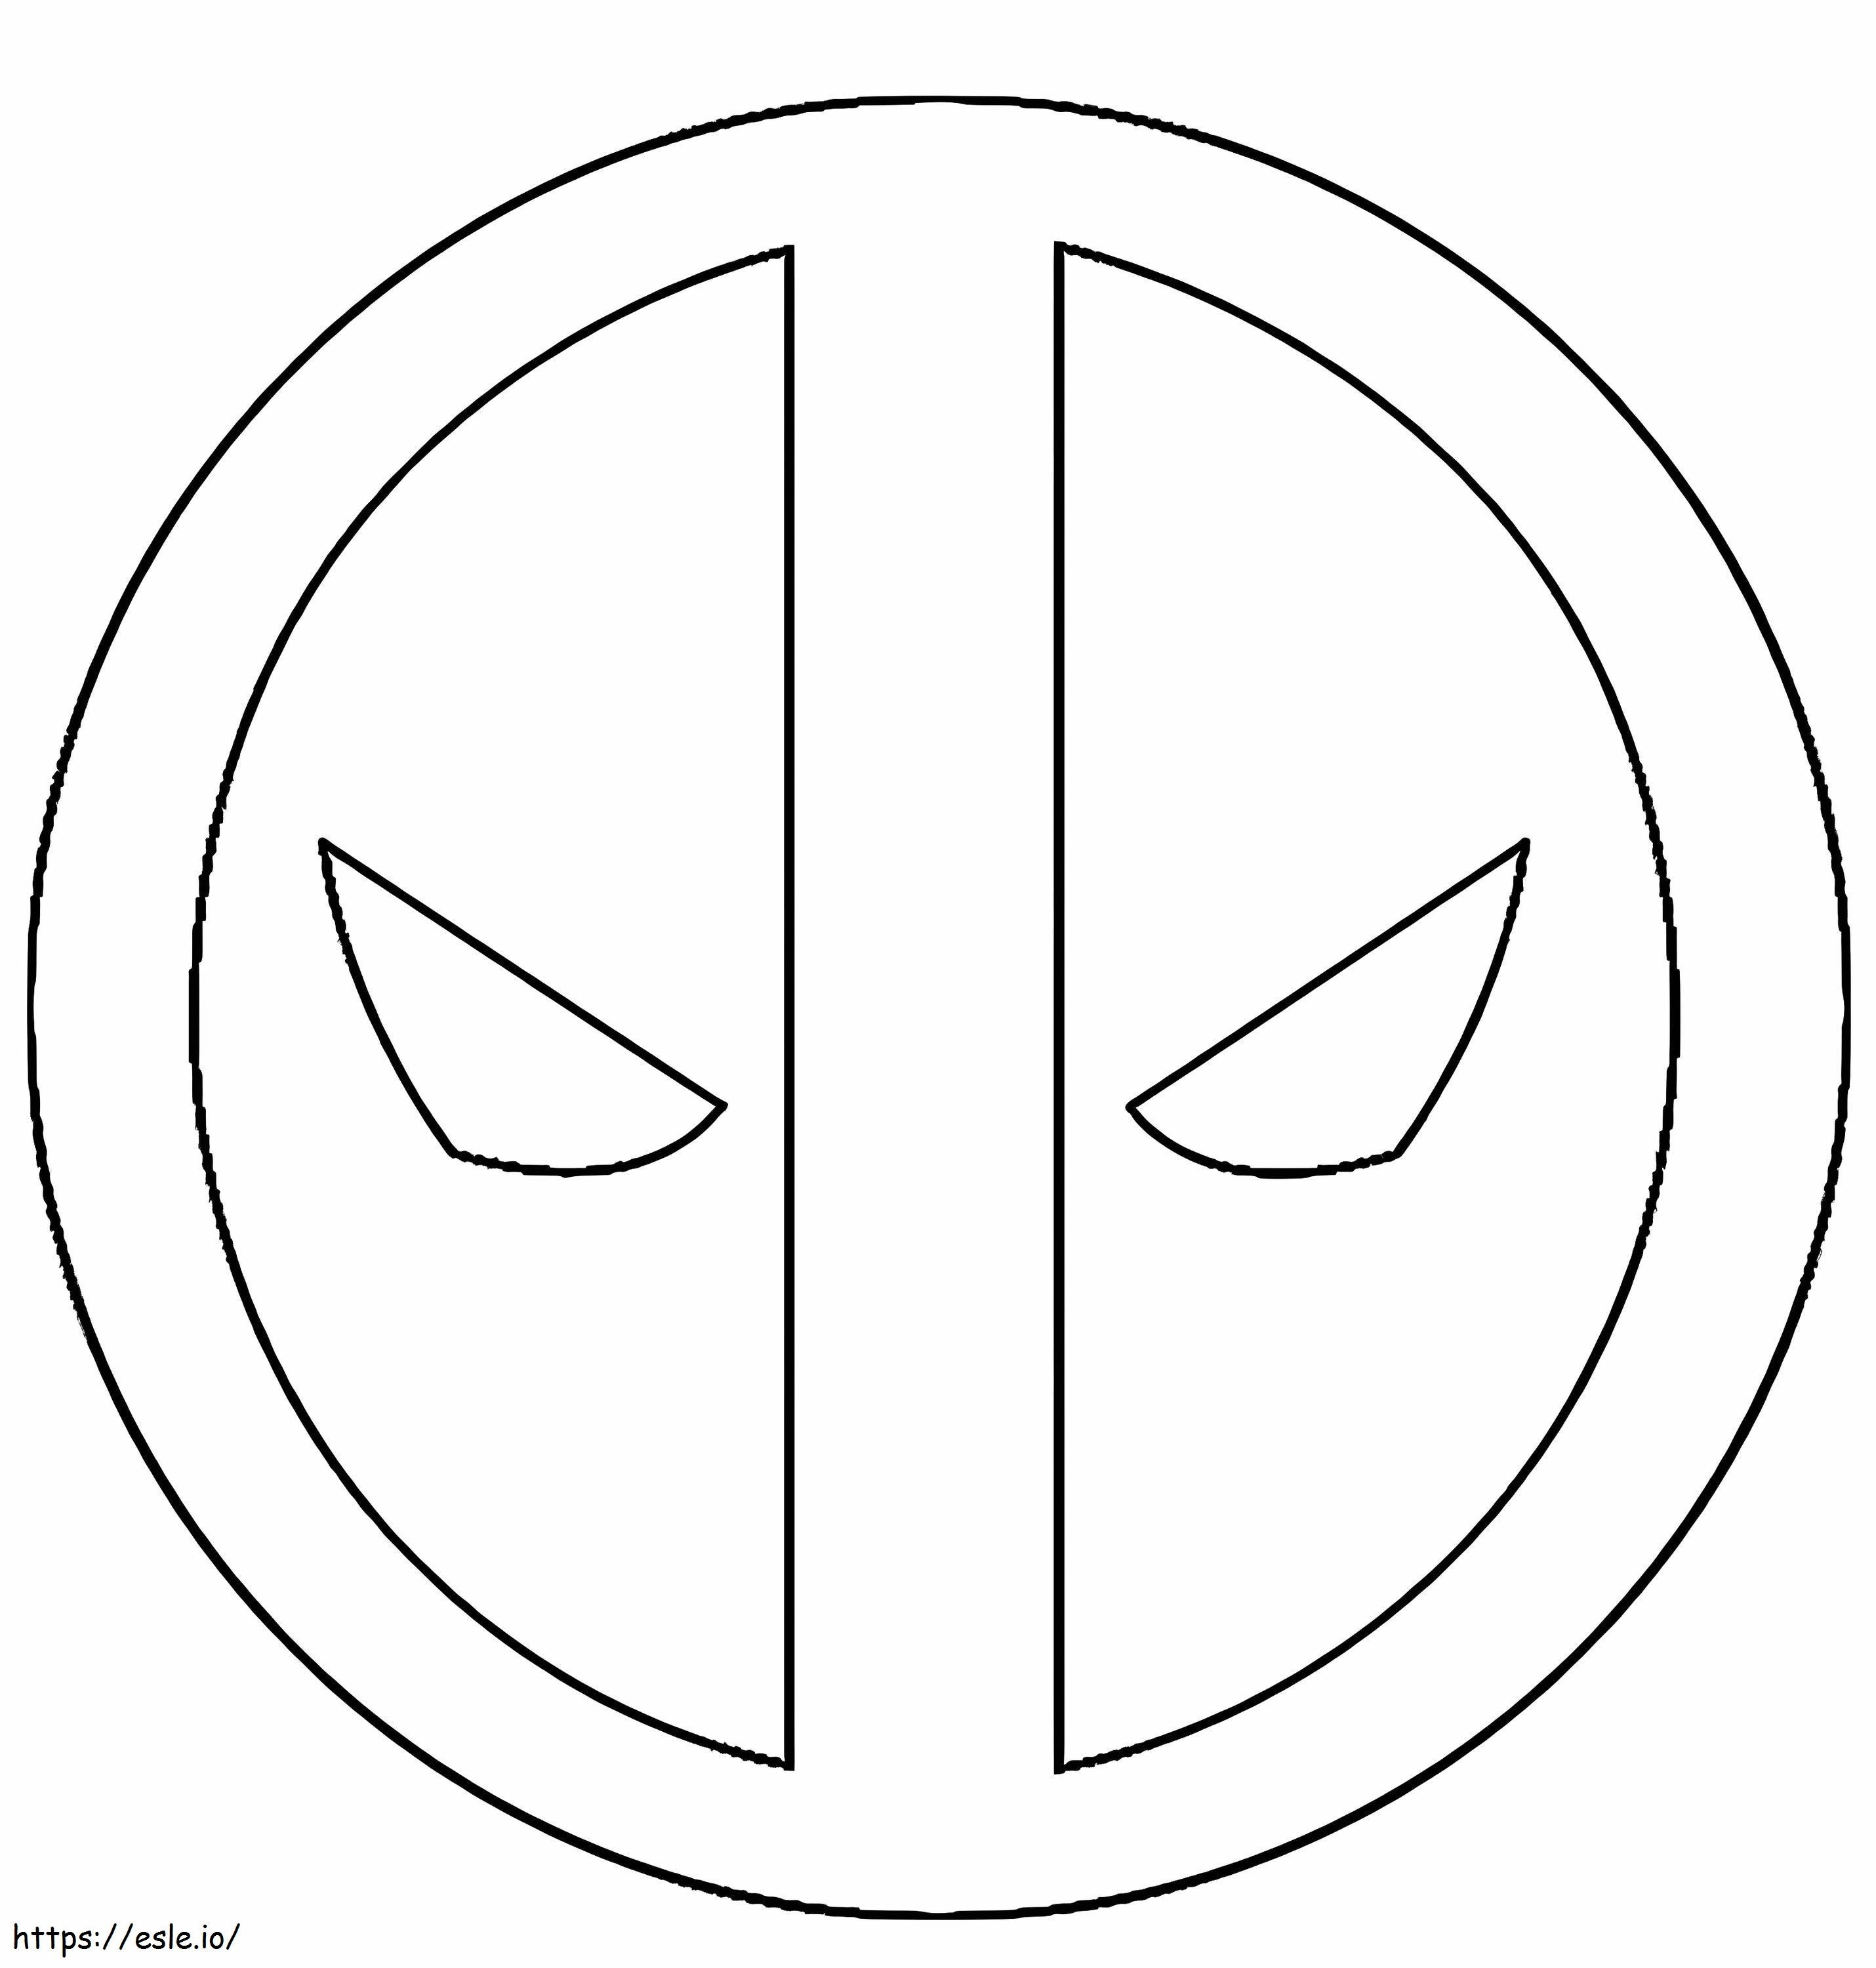 Simbolo O Deadpool para colorir